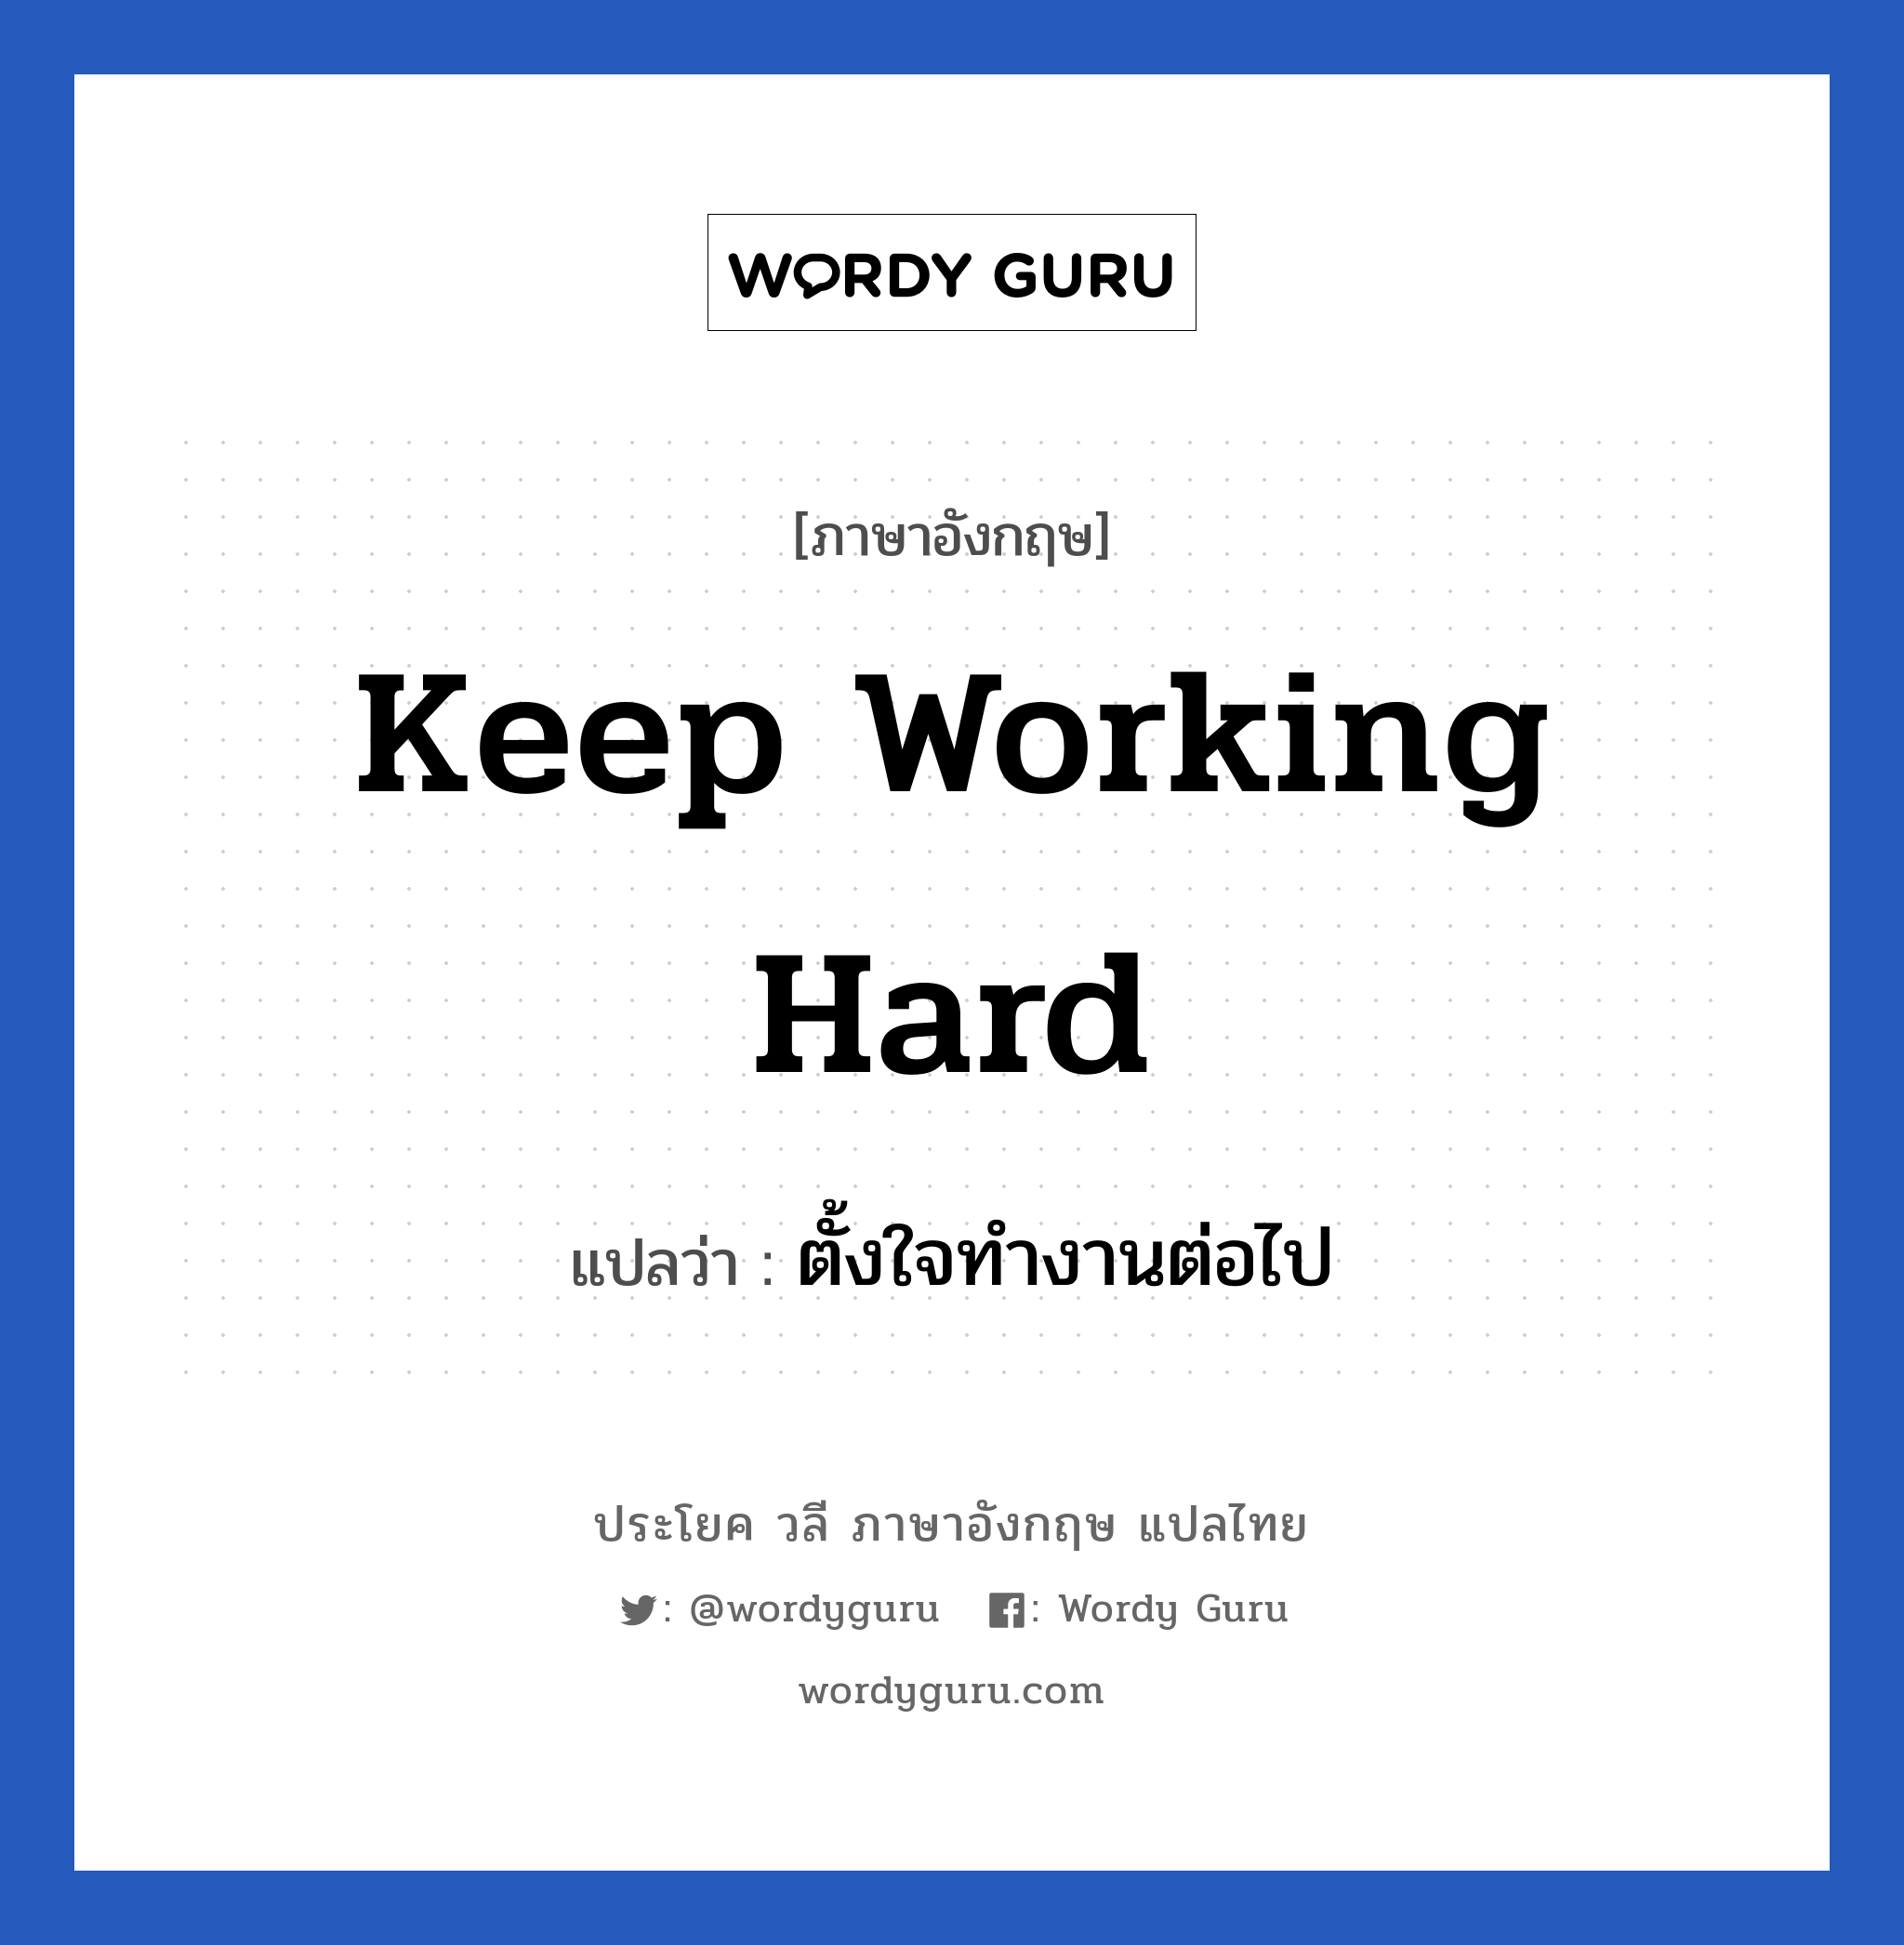 ตั้งใจทำงานต่อไป ภาษาอังกฤษ?, วลีภาษาอังกฤษ ตั้งใจทำงานต่อไป แปลว่า Keep working hard